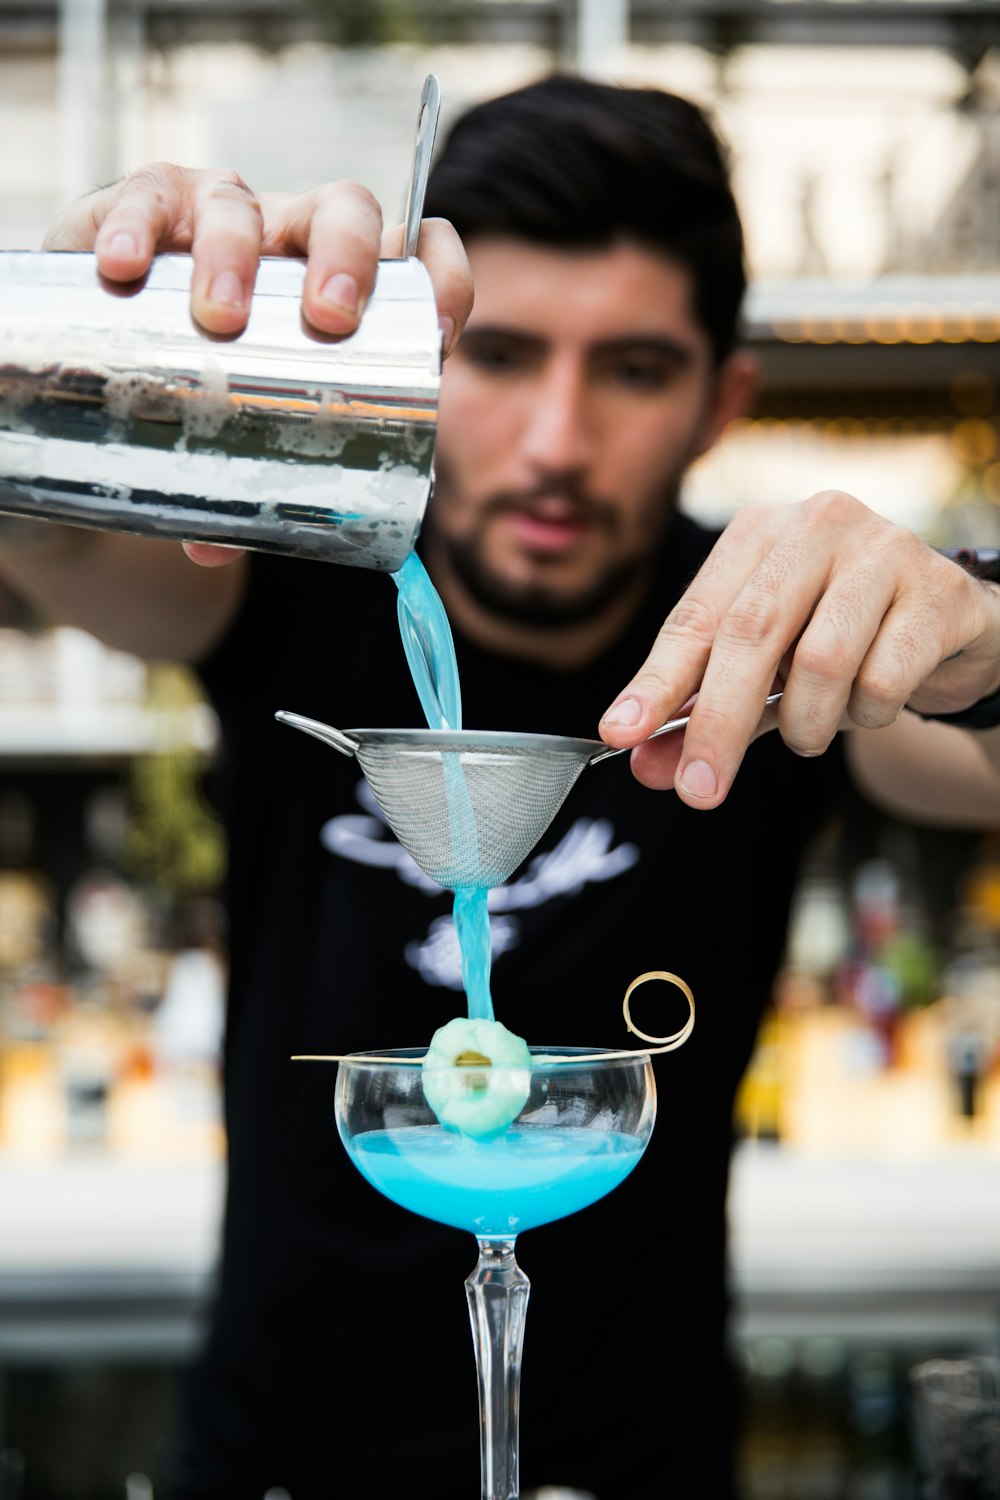 青い液体の入った透明なガラスのコップを持つ女性の写真 Unsplashで見つけるライムズ ホテルの無料写真